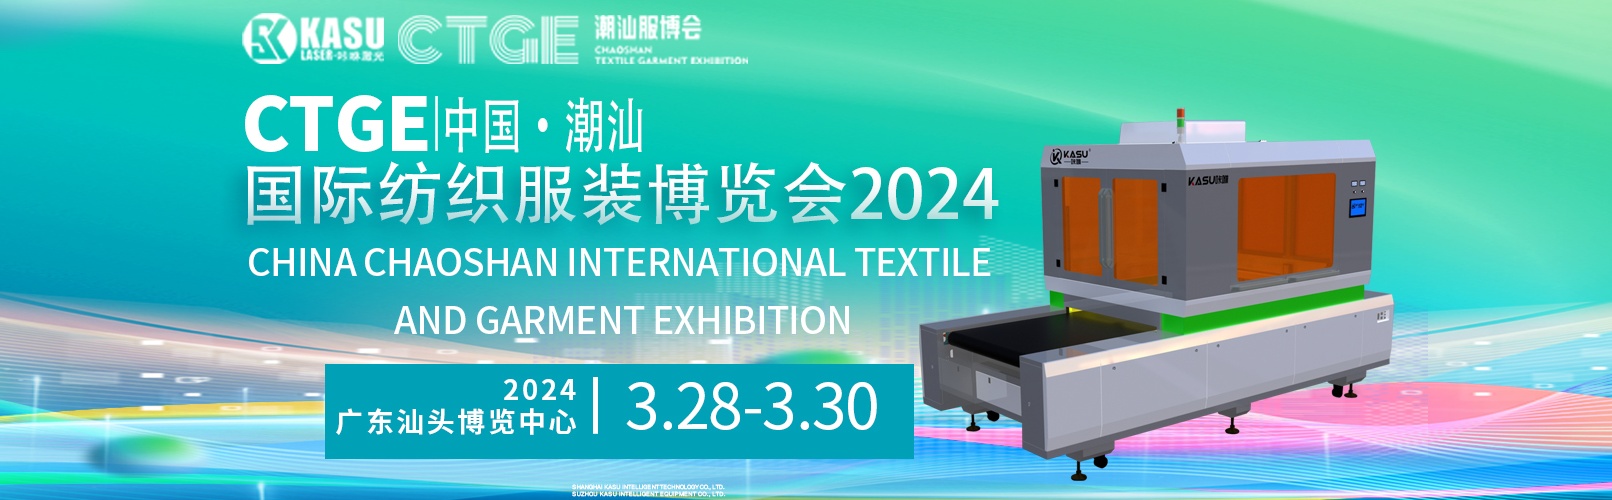 展会邀请丨2024 CTGE 中国·潮汕国际纺织服装博览会